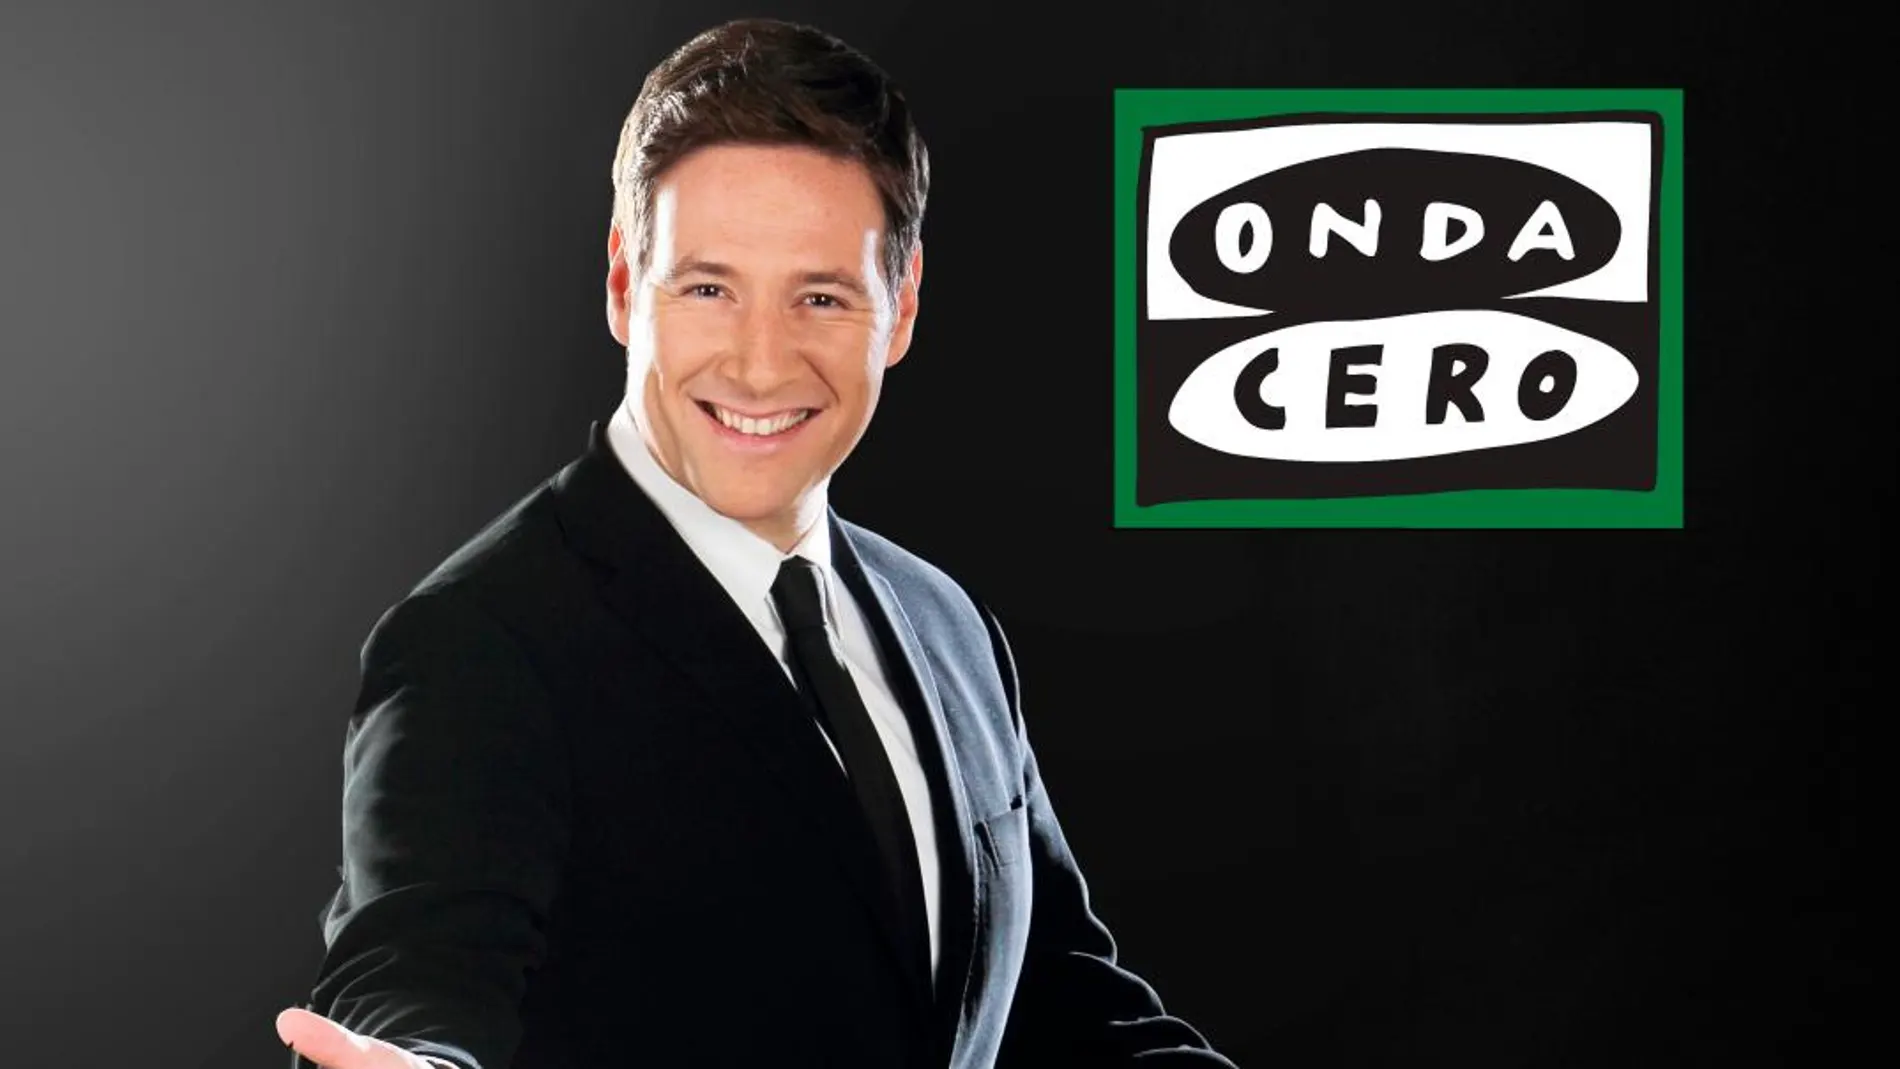 Carlos Latre conducirá un nuevo programa de humor en Onda Cero